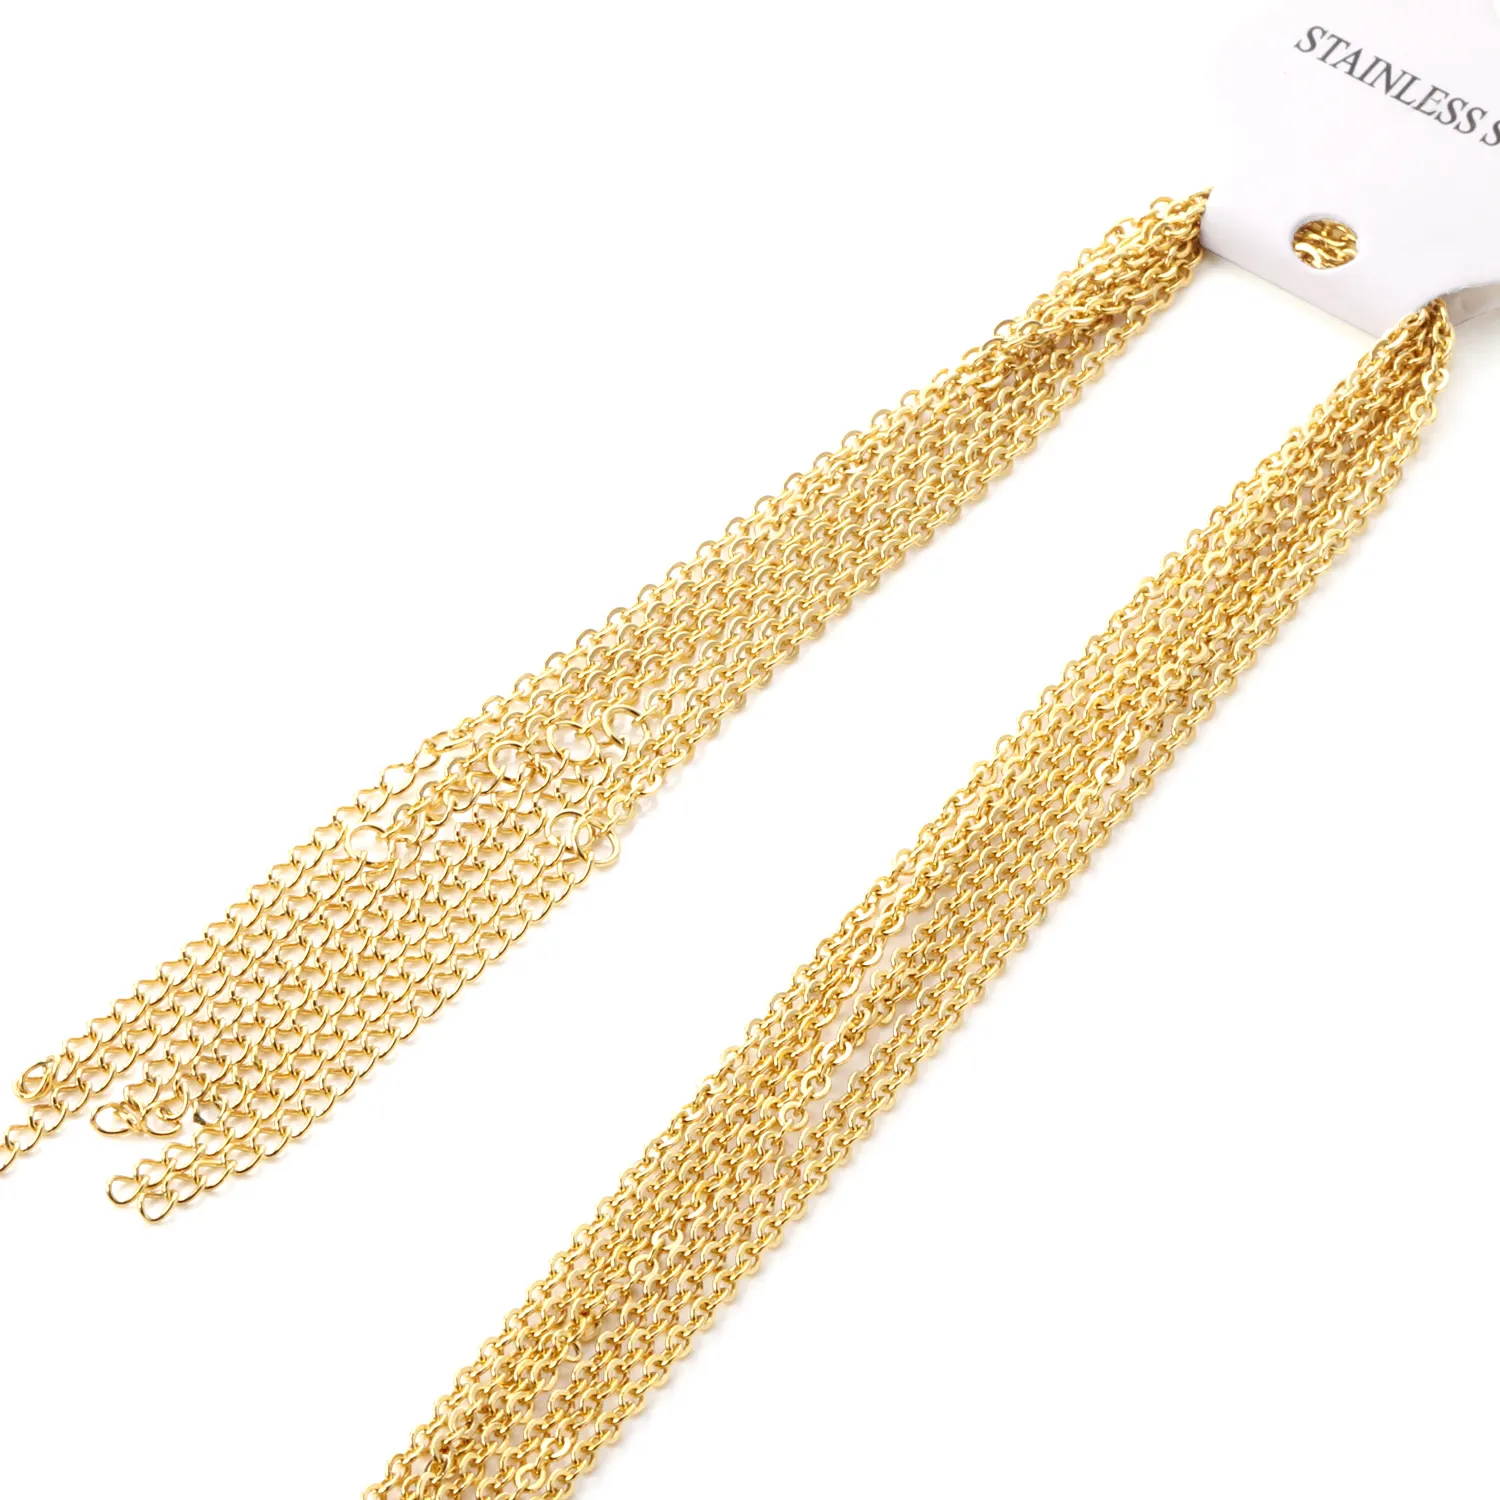 14 Karat Gold gefüllte Kette Edelstahl kette Halskette ohne Anhänger 5cm Verlängerung kette längere Kette für gute Qualität